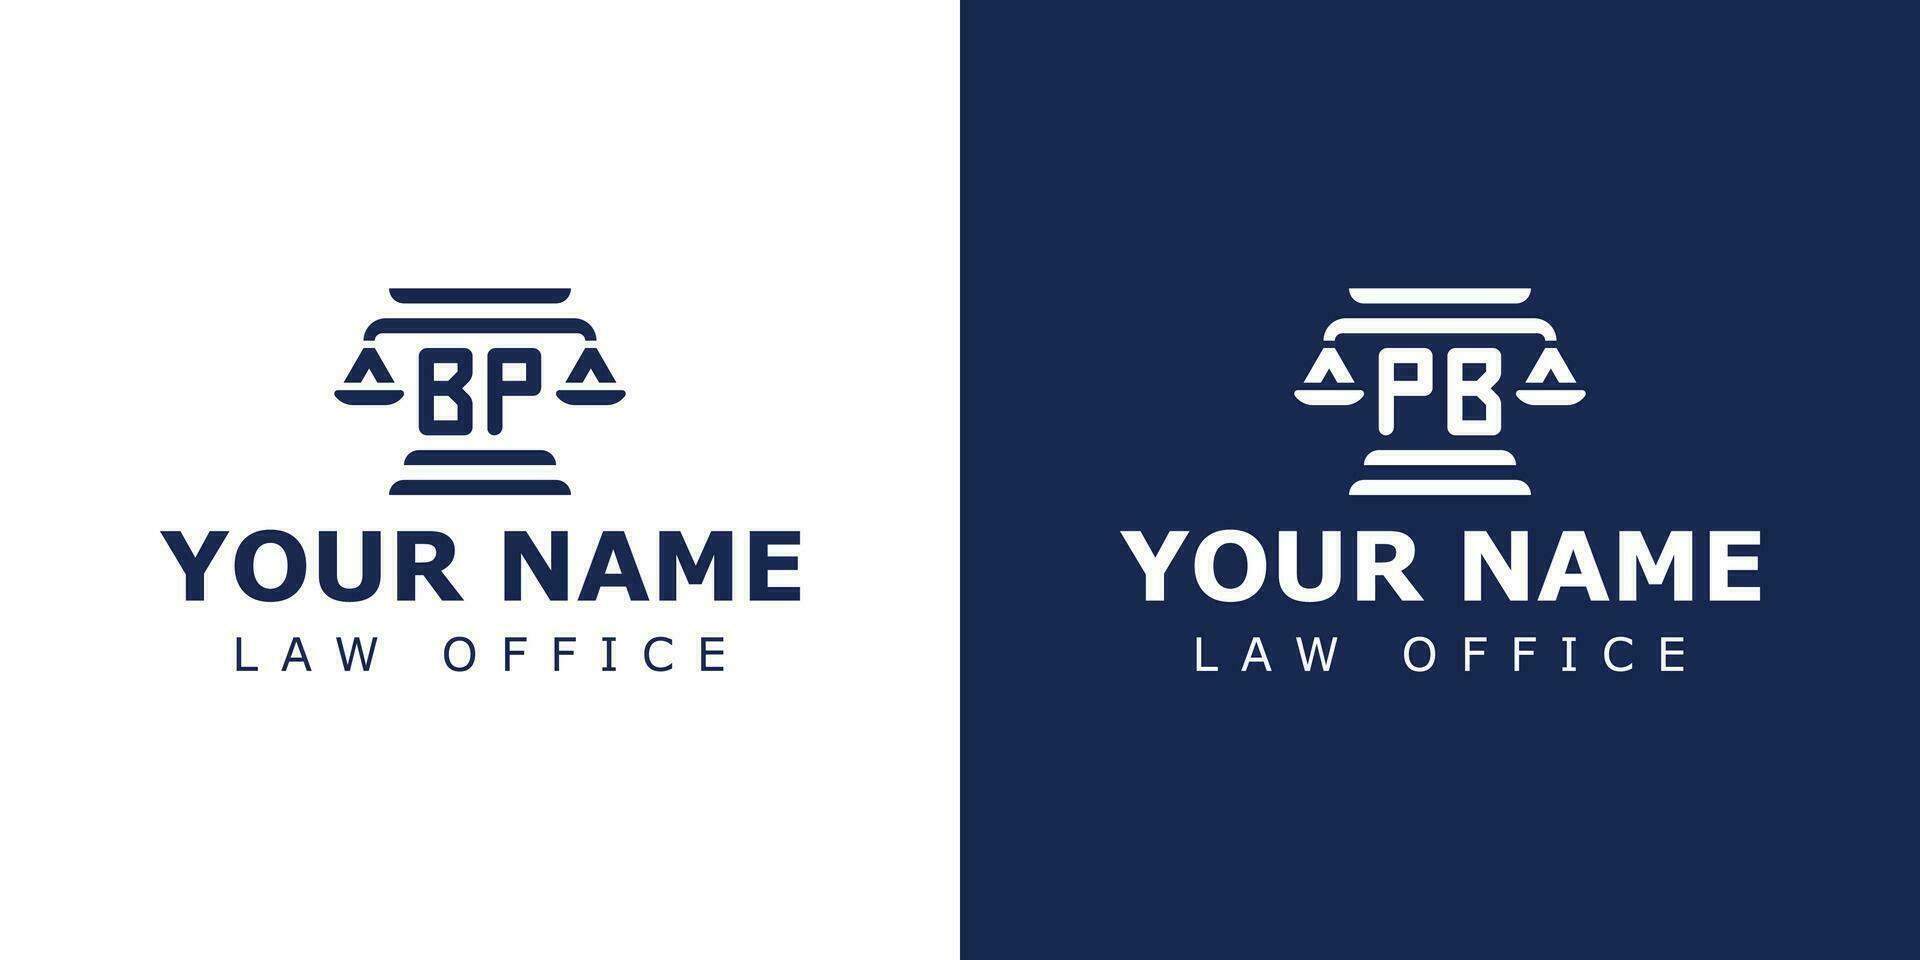 carta bp e pb legal logotipo, adequado para qualquer o negócio relacionado para advogado, jurídico, ou justiça com bp ou pb iniciais vetor